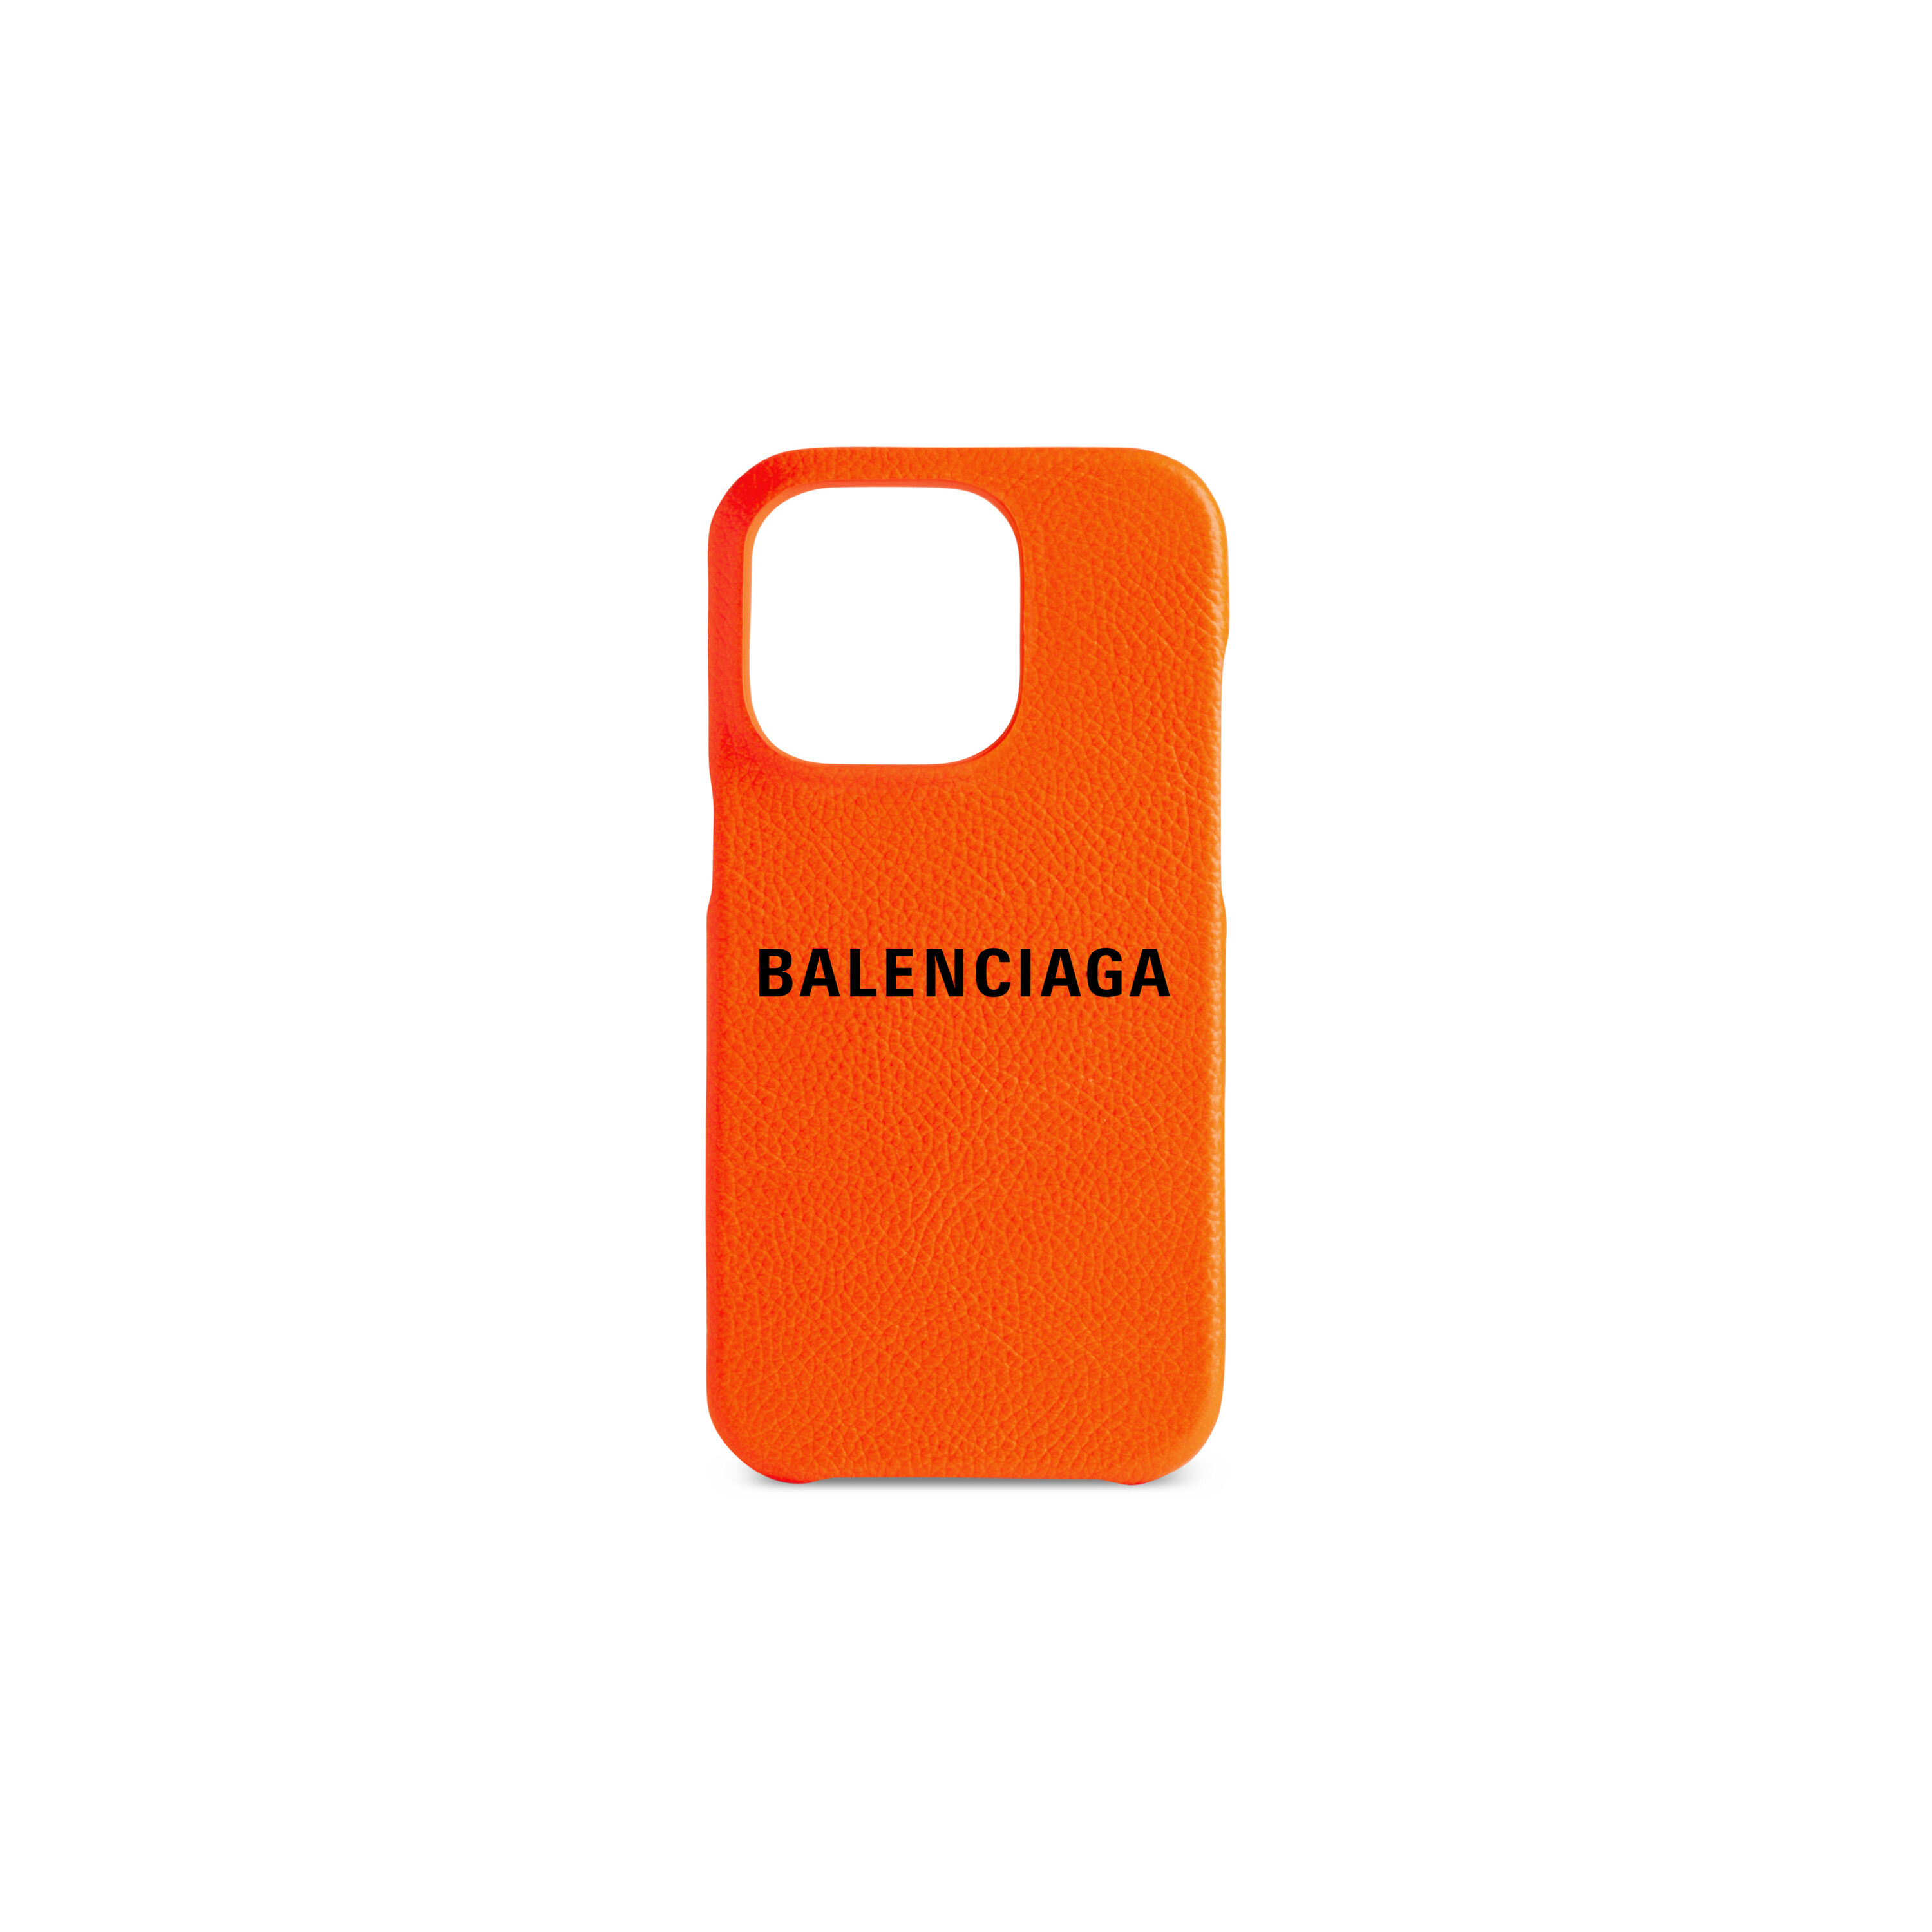 Case for iPhone 11 PRO MAX  Balenciaga logo